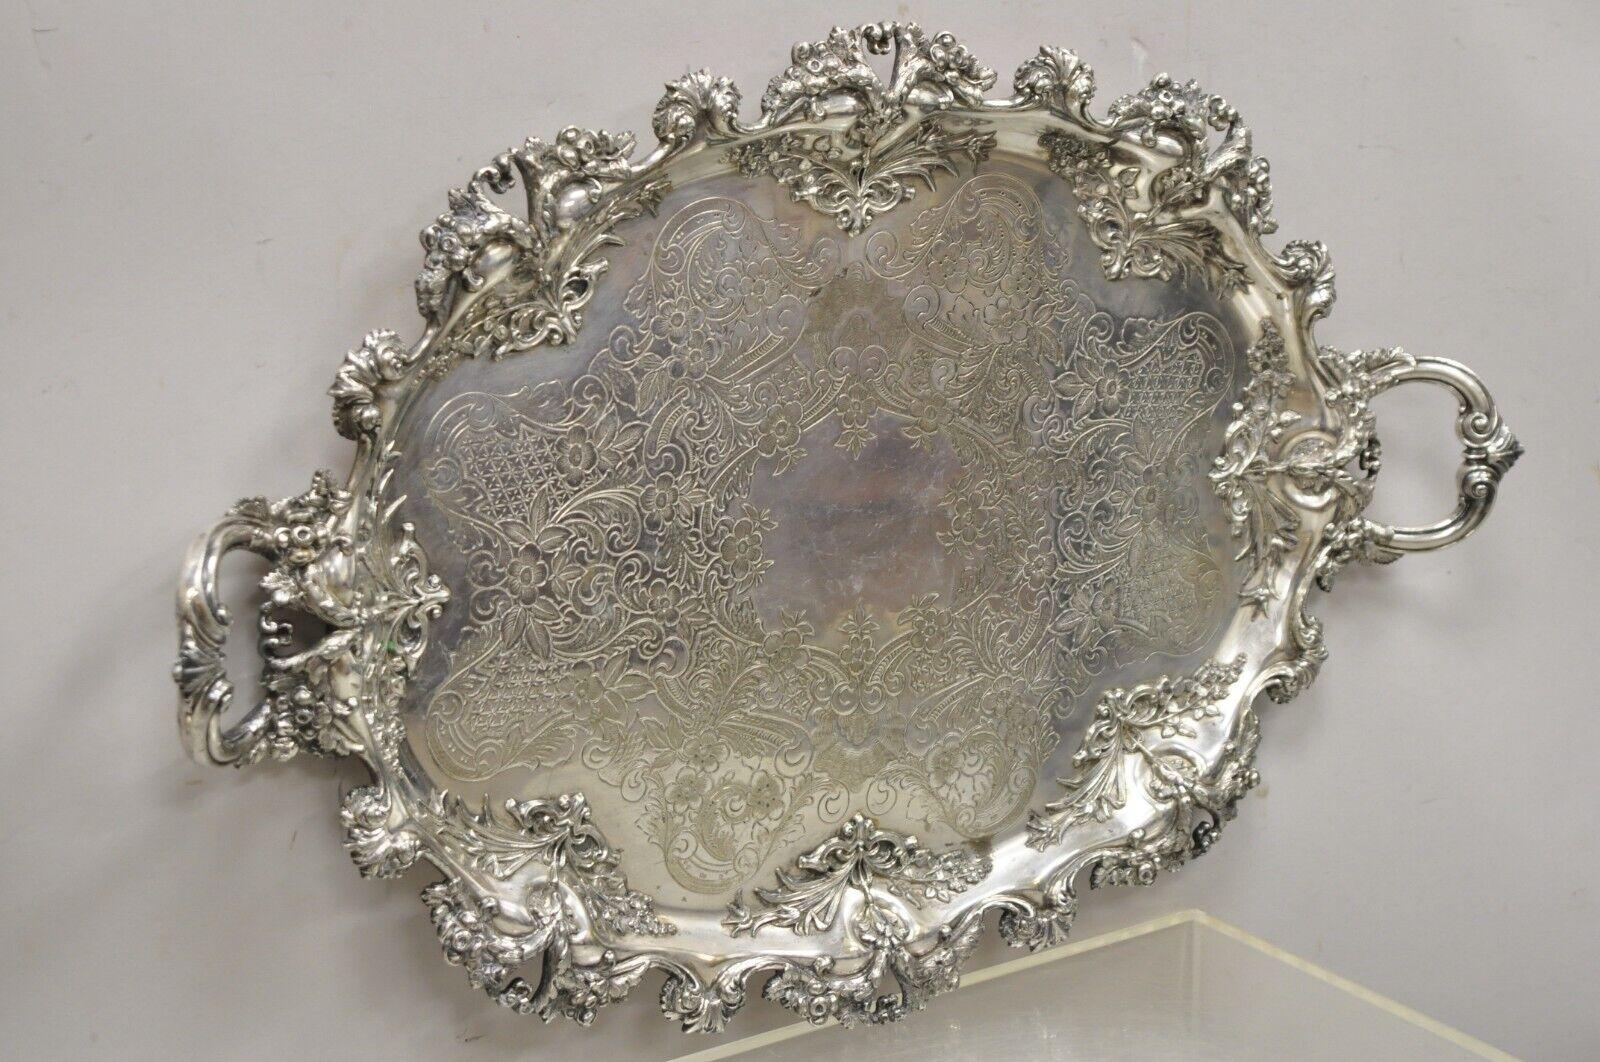 Barbour Co BSCEP antique Victorian ornate silver plate repousse oval plate plate. L'objet présente des rinceaux feuillus extrêmement ornés, un fin travail de repoussage, des poignées jumelles surélevées, des rinceaux gravés au centre, de multiples